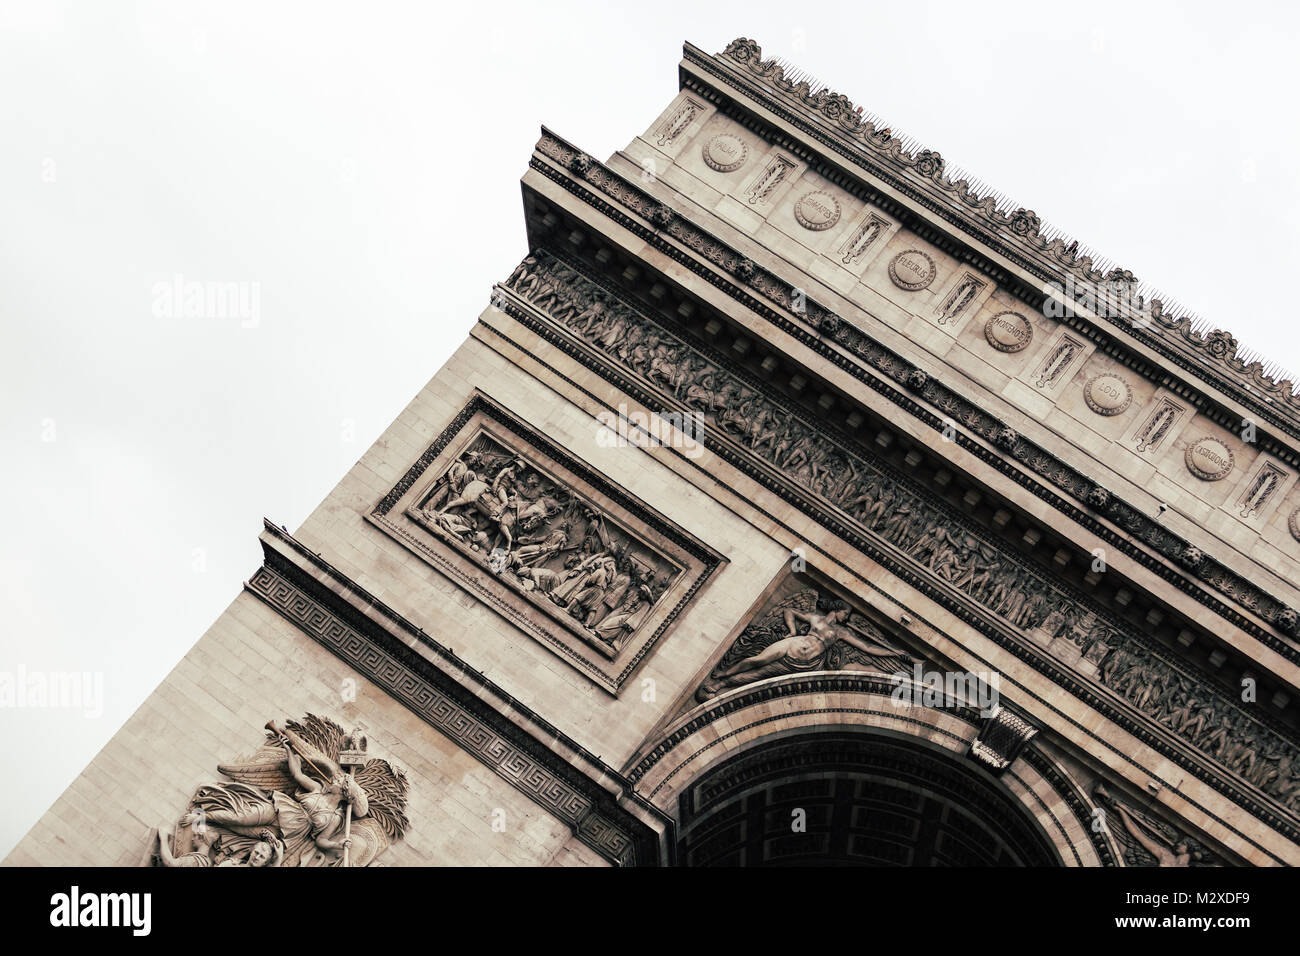 L'emblématique Arc de Triomphe dans un ciel bleu à Paris, France, Europe. Lieux touristiques célèbres en Europe. Ville européenne travel concept. Banque D'Images